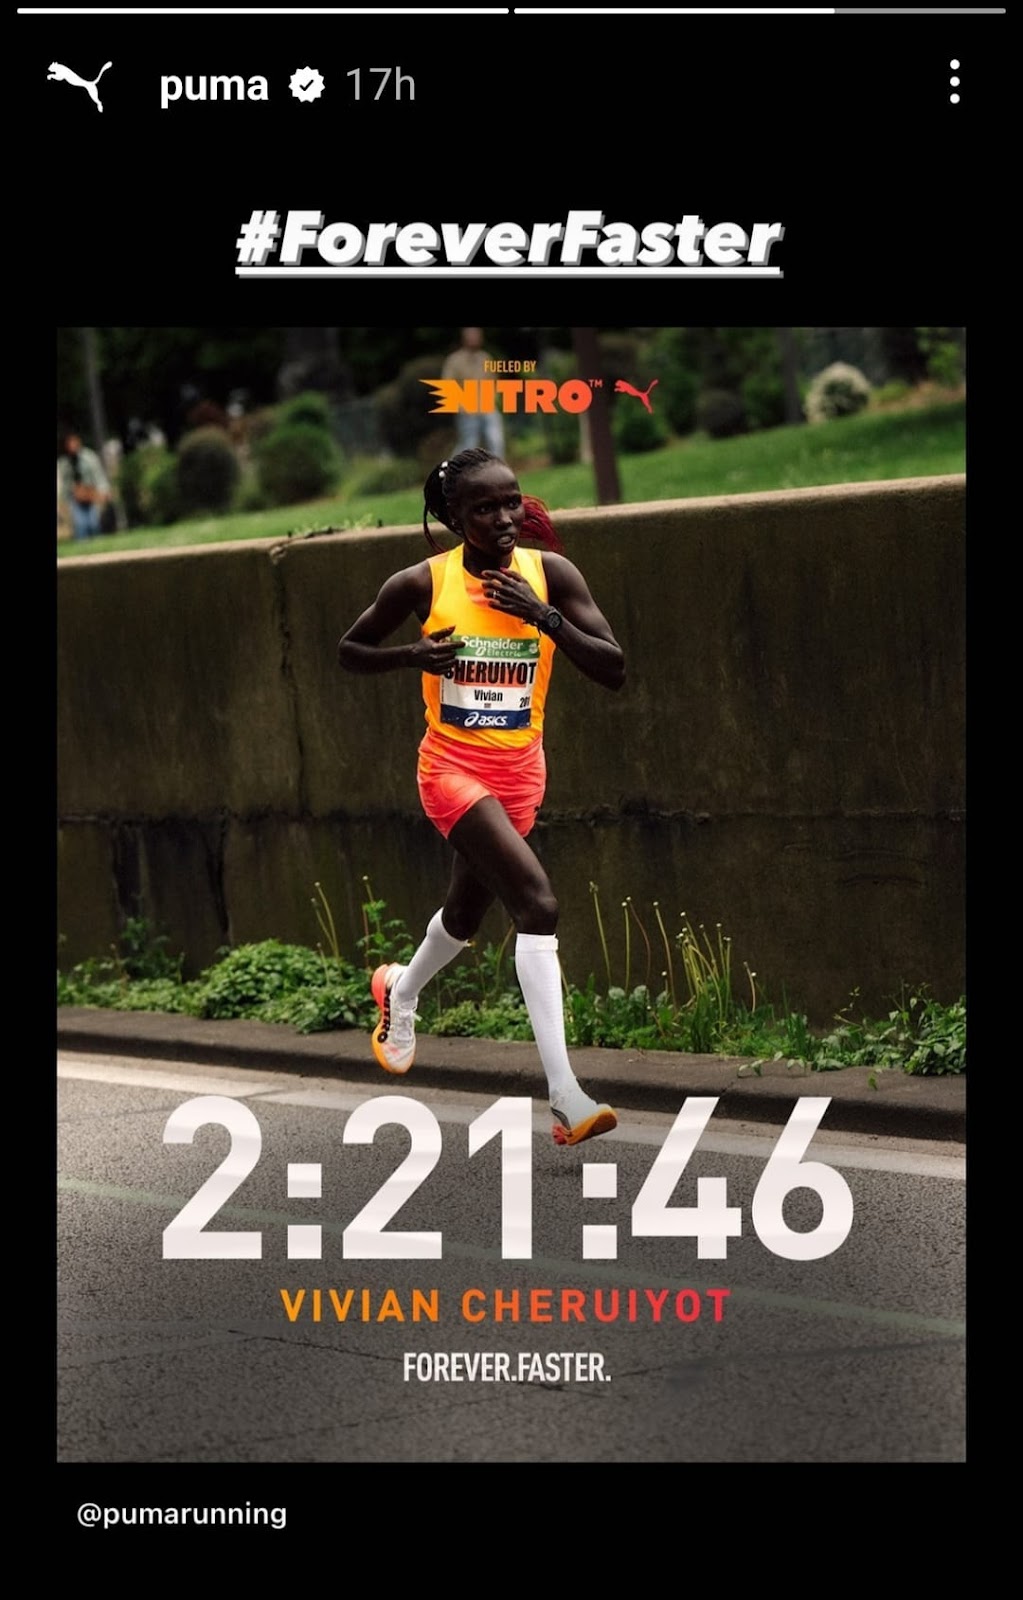 Puma instagram story of runner Vivian Cheruiyot's running time